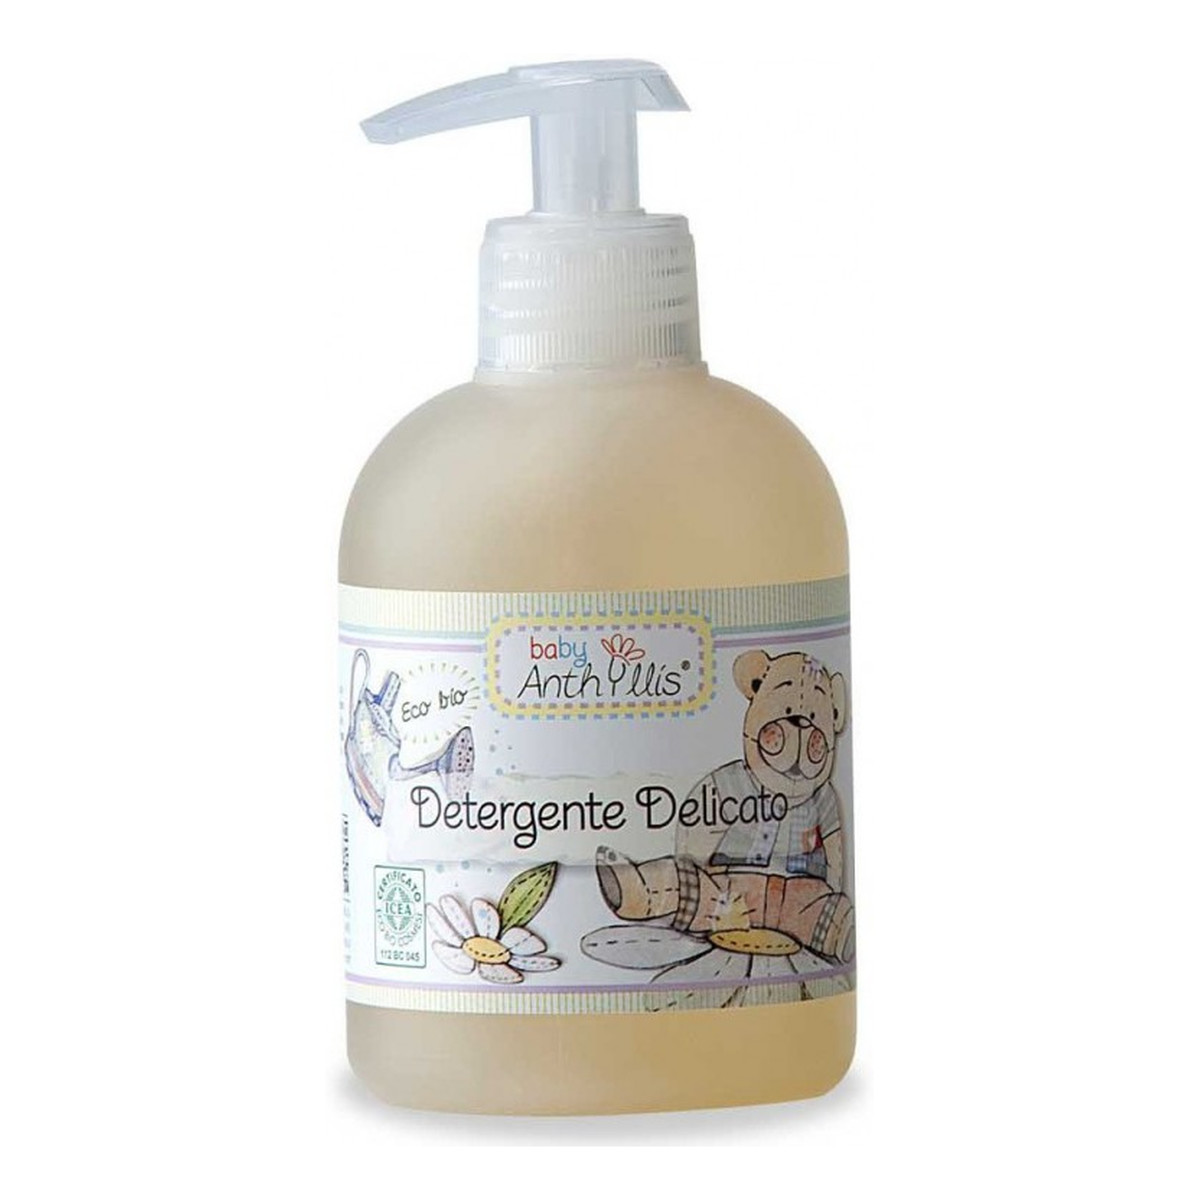 Anthyllis Baby Detergente Delicato Delikatne mydło w płynie dla niemowląt i dzieci 300ml